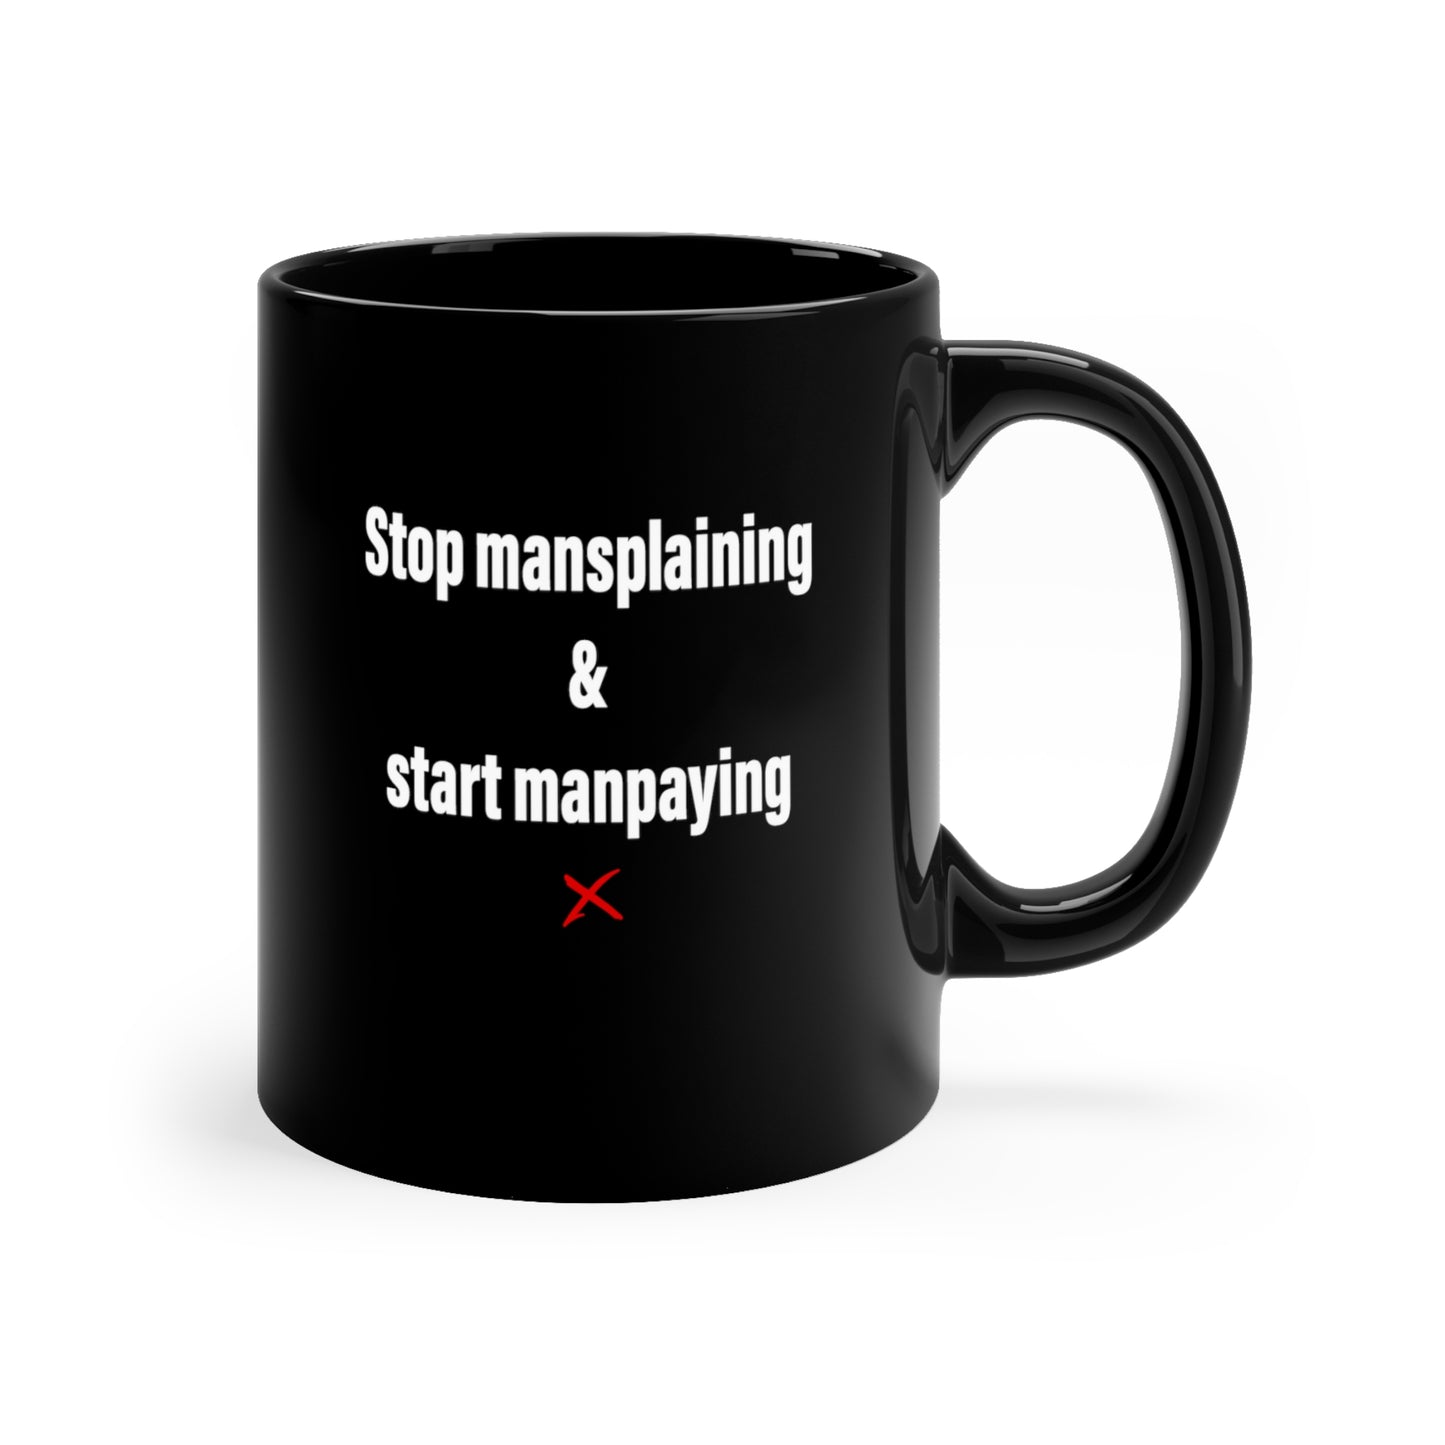 Stop mansplaining & start manpaying - Mug